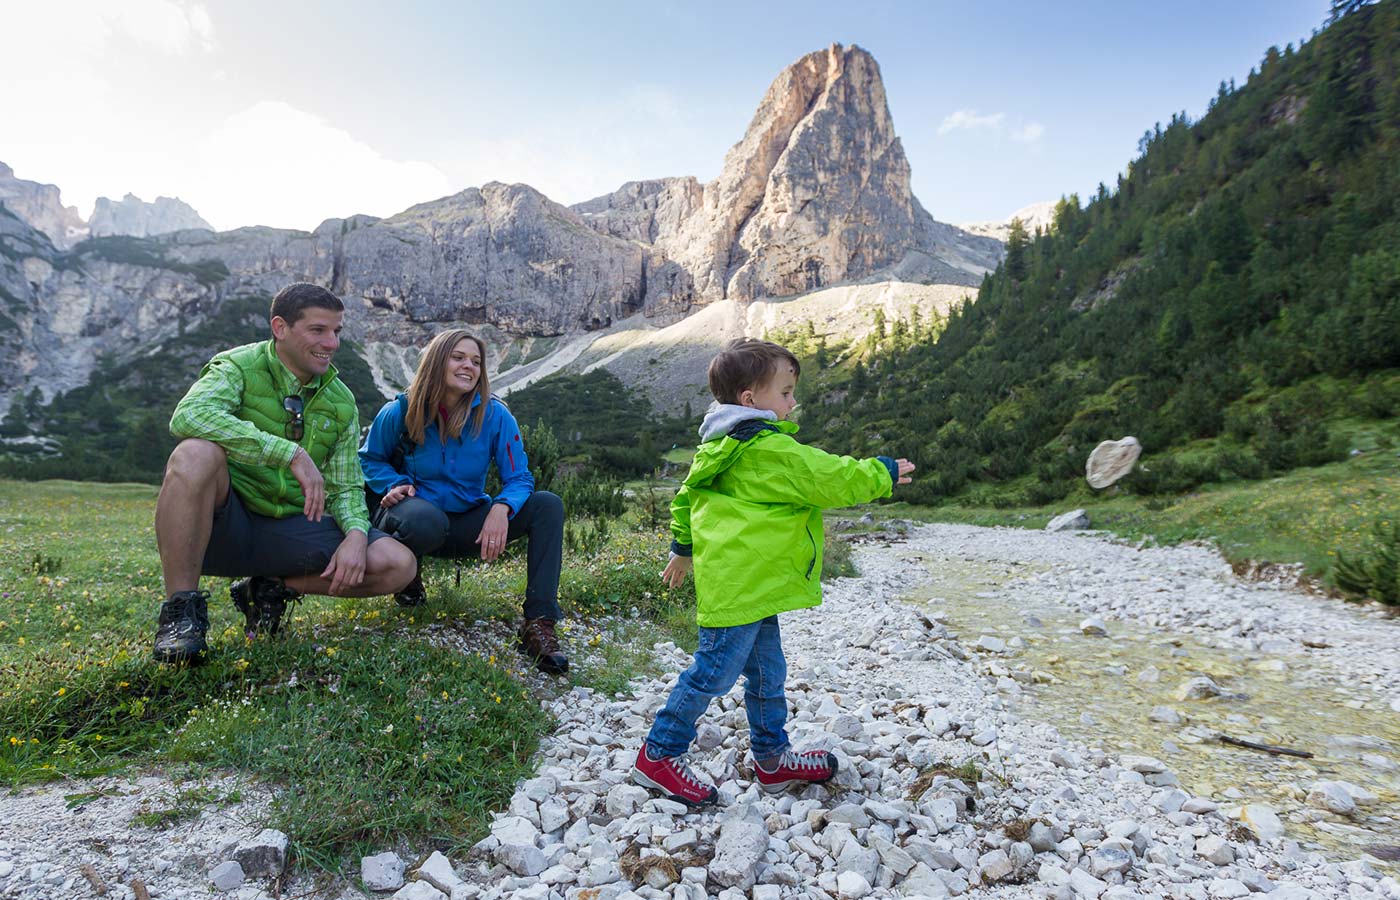 Gita in famiglia con le Dolomiti sullo sfondo